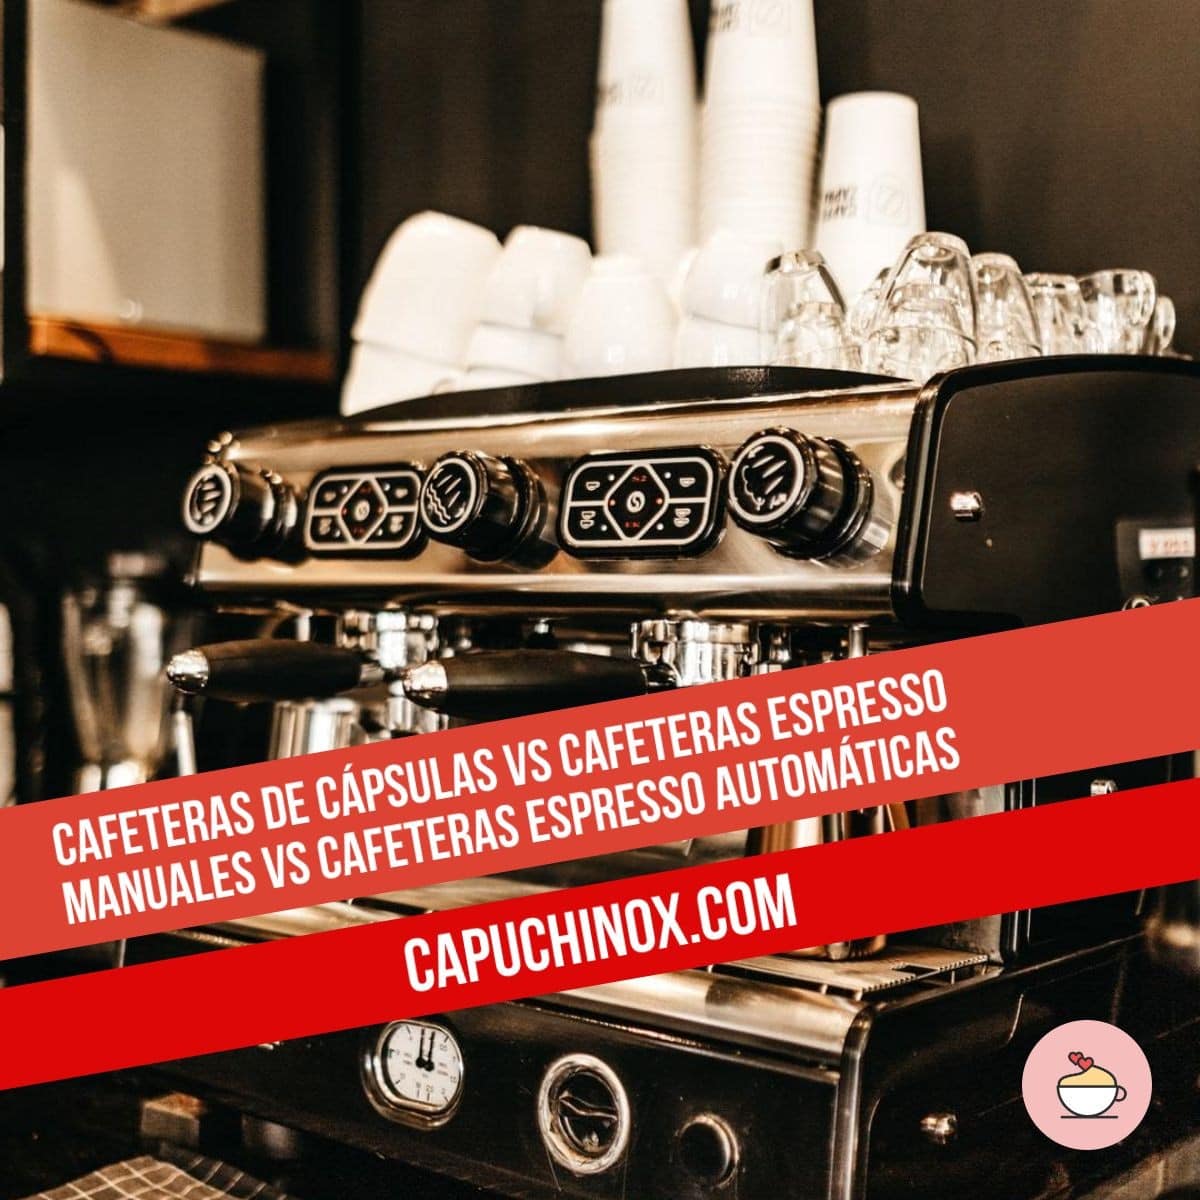 Cafeteras de cápsulas vs cafeteras espresso manuales vs cafeteras espresso automáticas